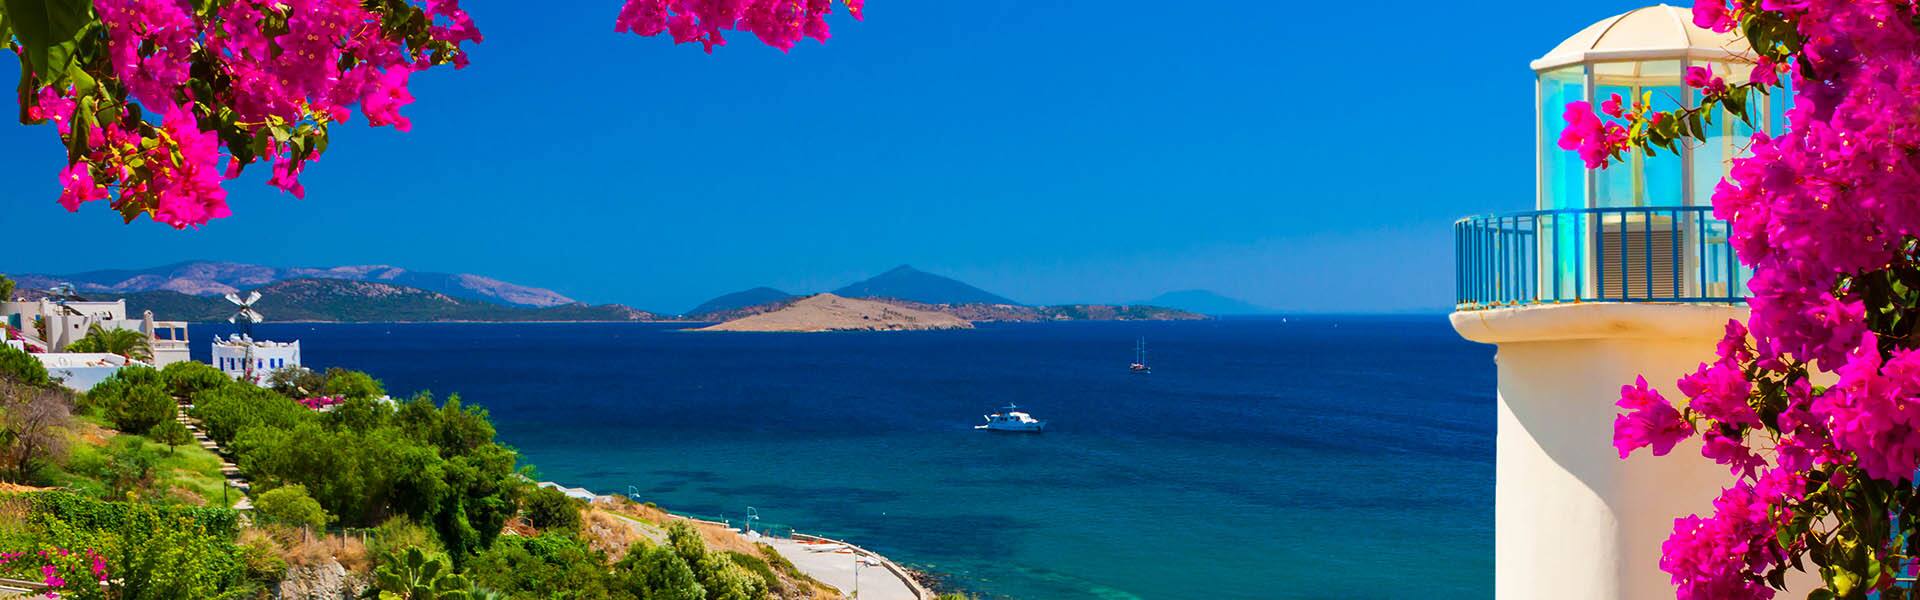 Islas griegas: Santorini, Miconos y Rodas